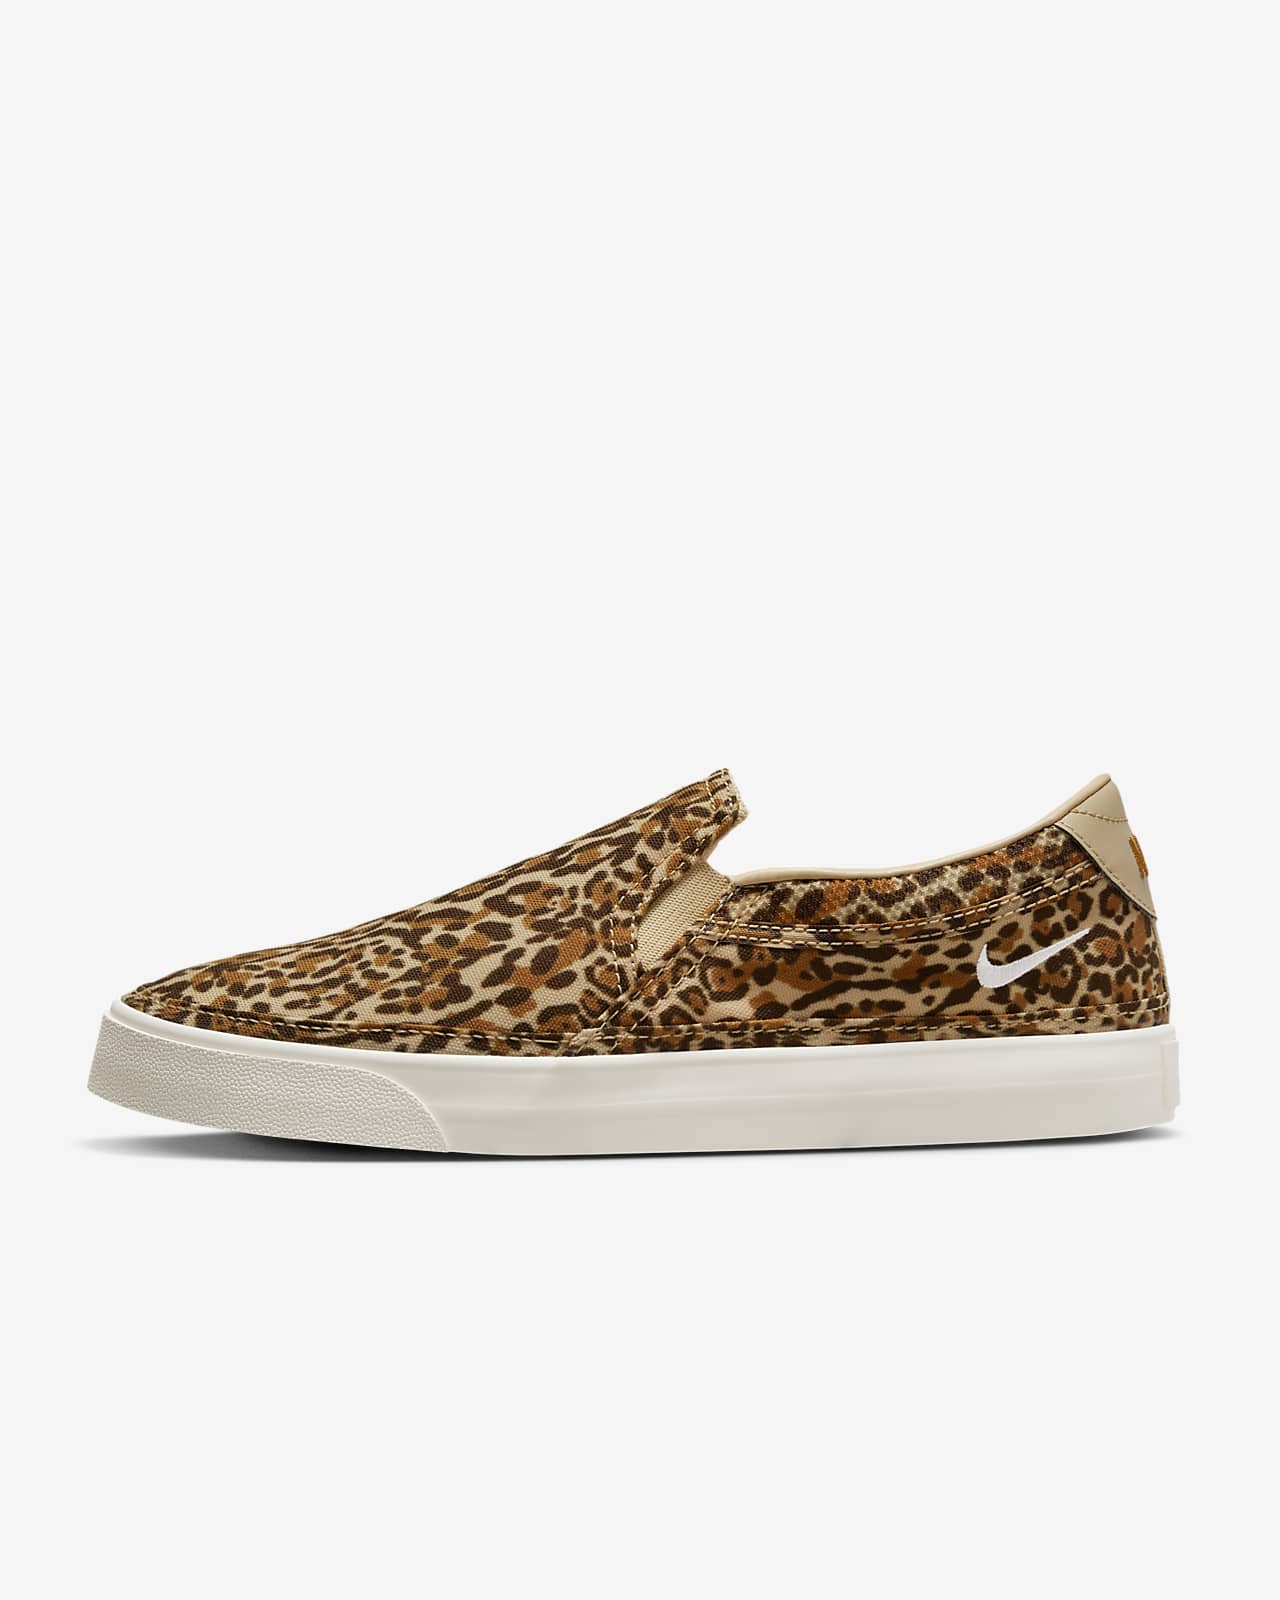 Nikecourt Legacy Leopard Women'S Slip-On Shoes. Nike Vn